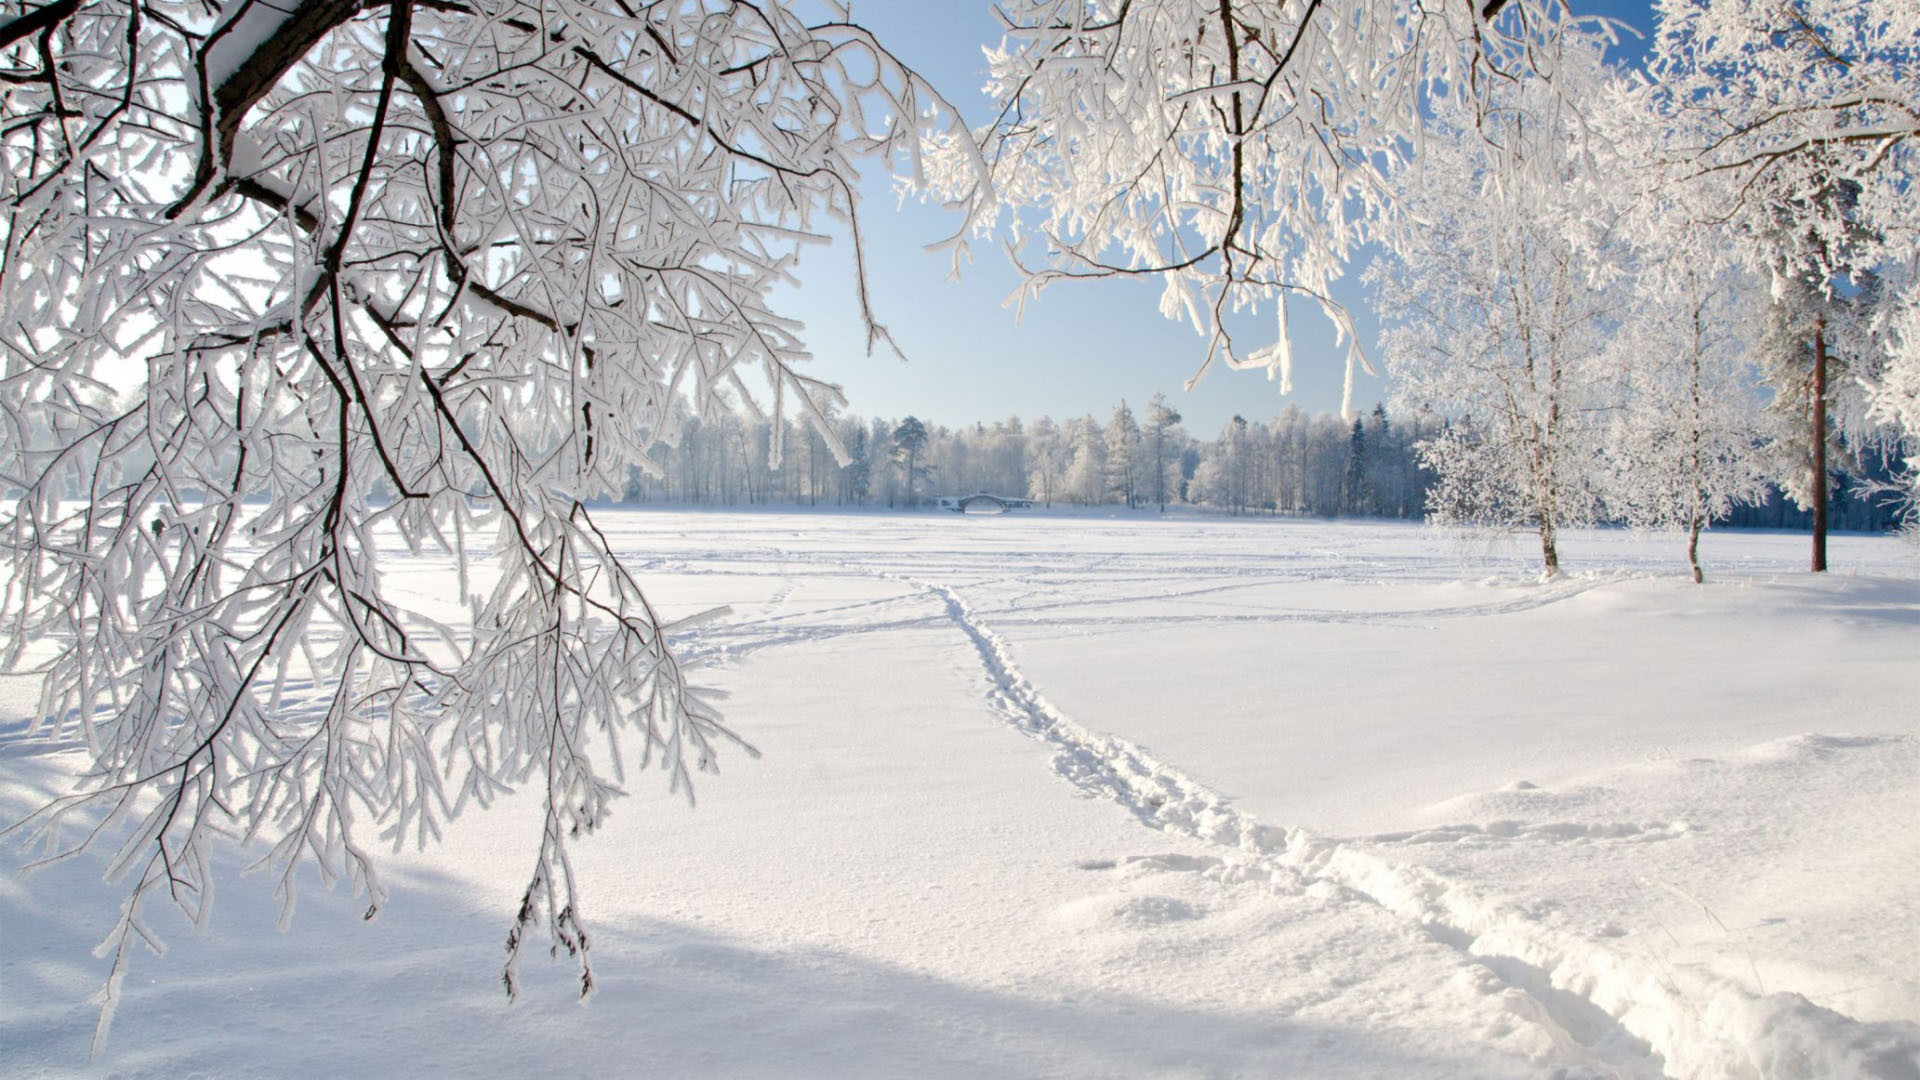 Download Winter Wonderlands 10  Hình nền bão tuyết mùa động cho máy